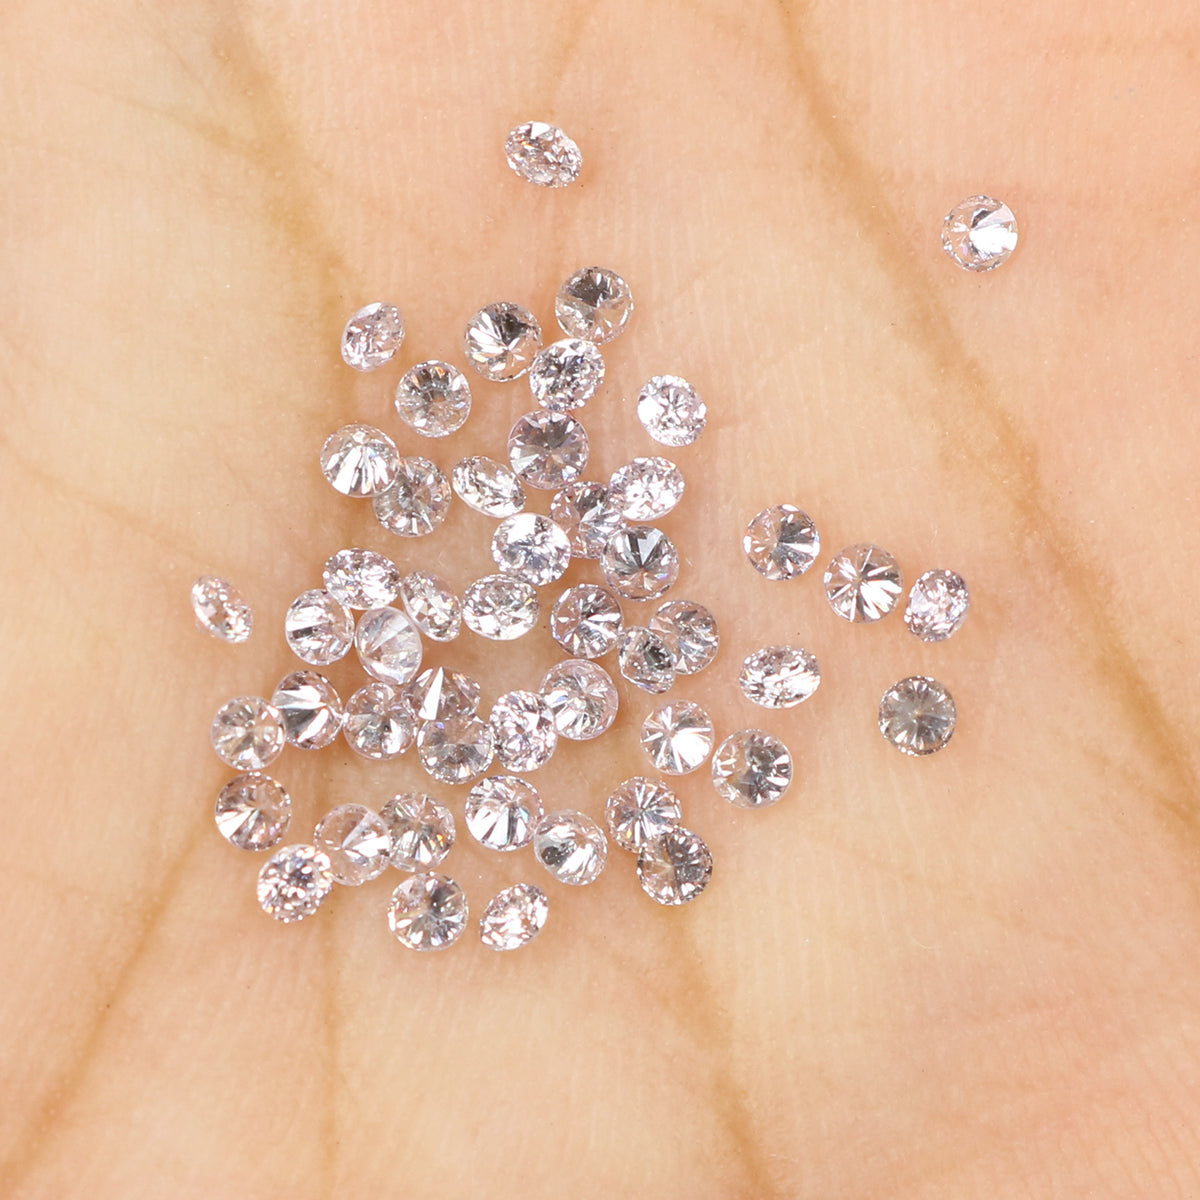 0.70 Ct Natural Loose Diamond, Pink Diamond, Round Diamond, Round Brilliant Cut Diamond, Sparkling Diamond, Rustic Diamond L894